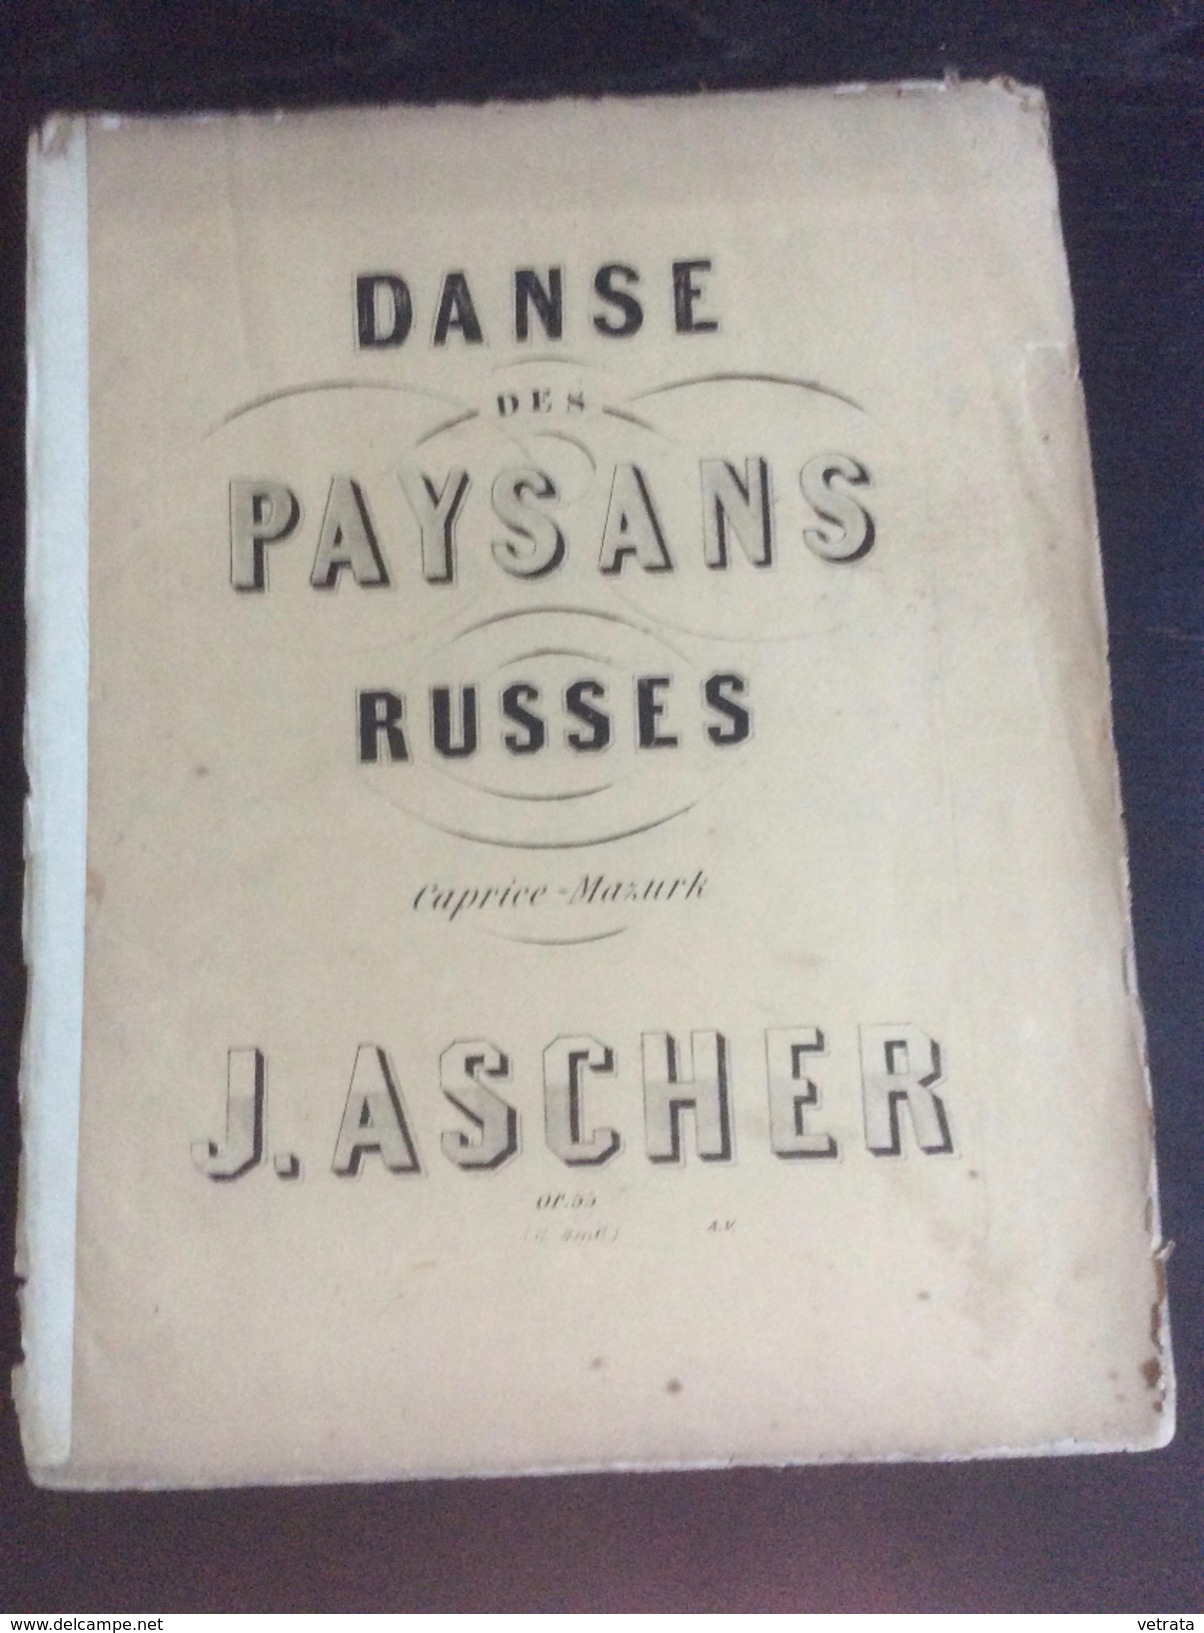 Partition : Danse Des Paysans Russes, J. Ascher (Lemoine Ed.- 5 Feuillets - Début Du Siècle Dernier - état Moyen) - Opera